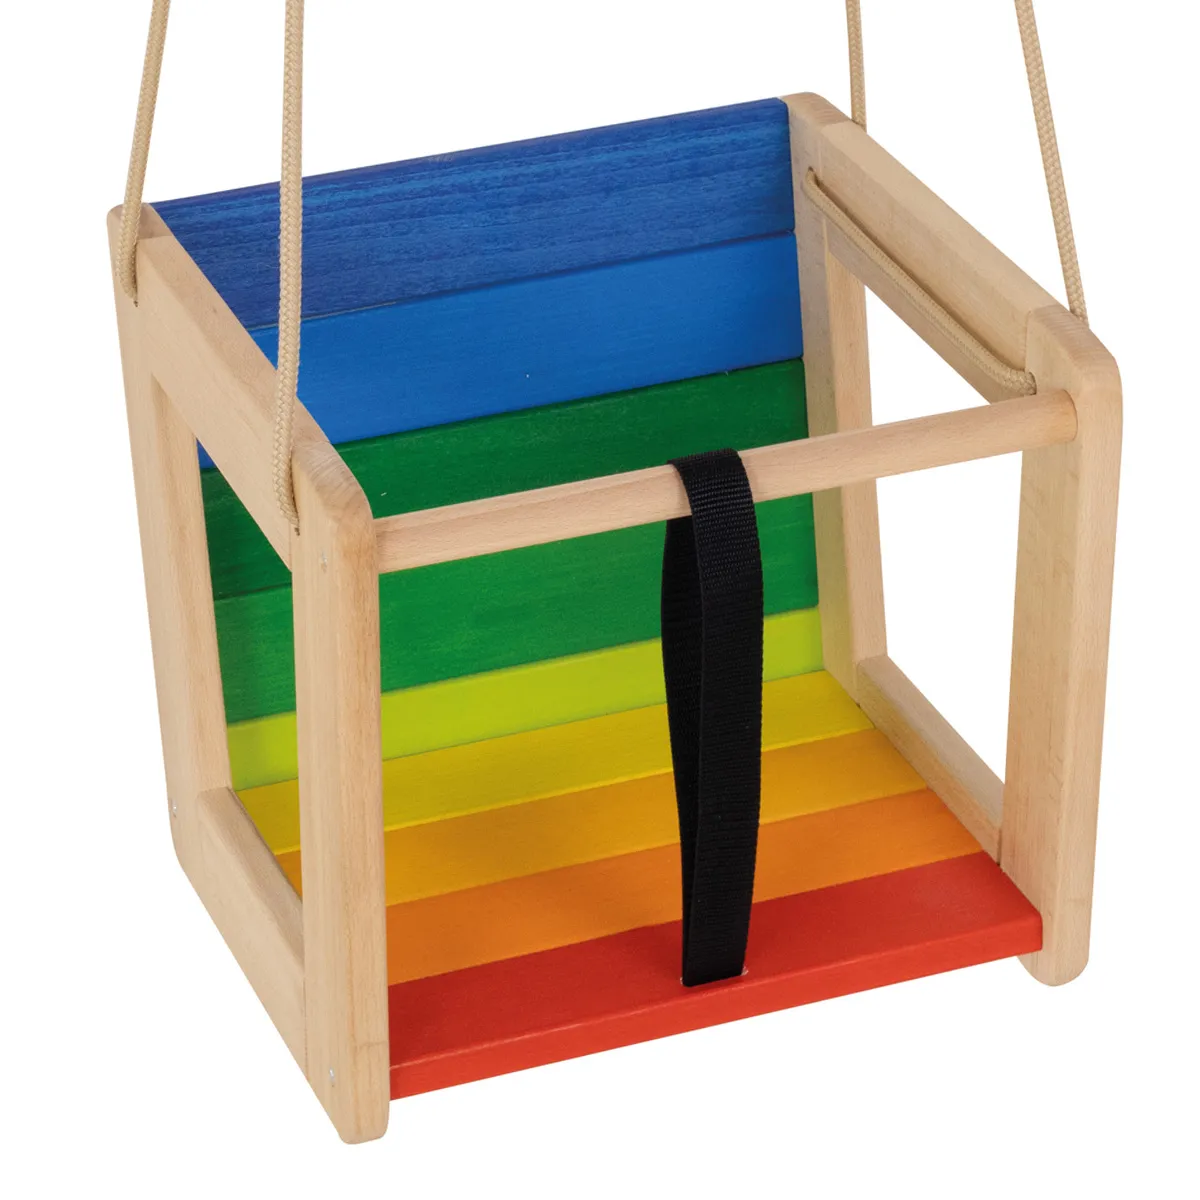 Gesicherte Kinder-Holz-Schaukel mit Sitzfläche in bunten Regenbogenfarben.